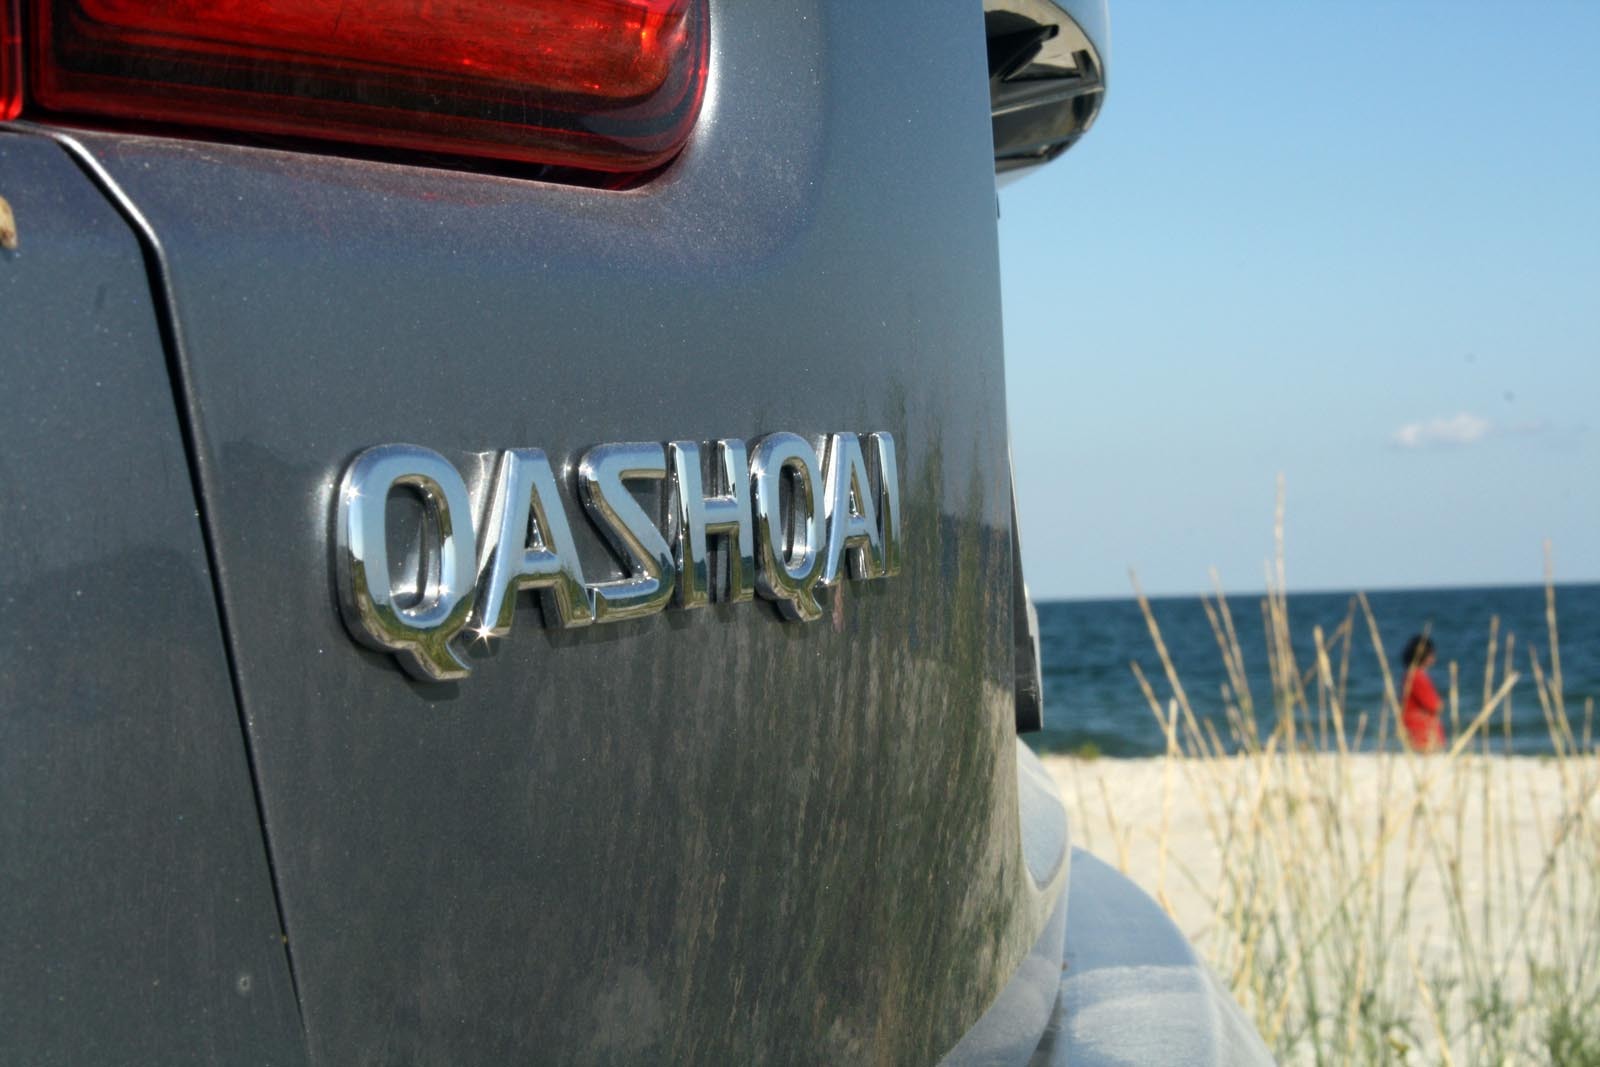 Deja au fost produse peste 1.000.000 de exemplare Nissan Qashqai